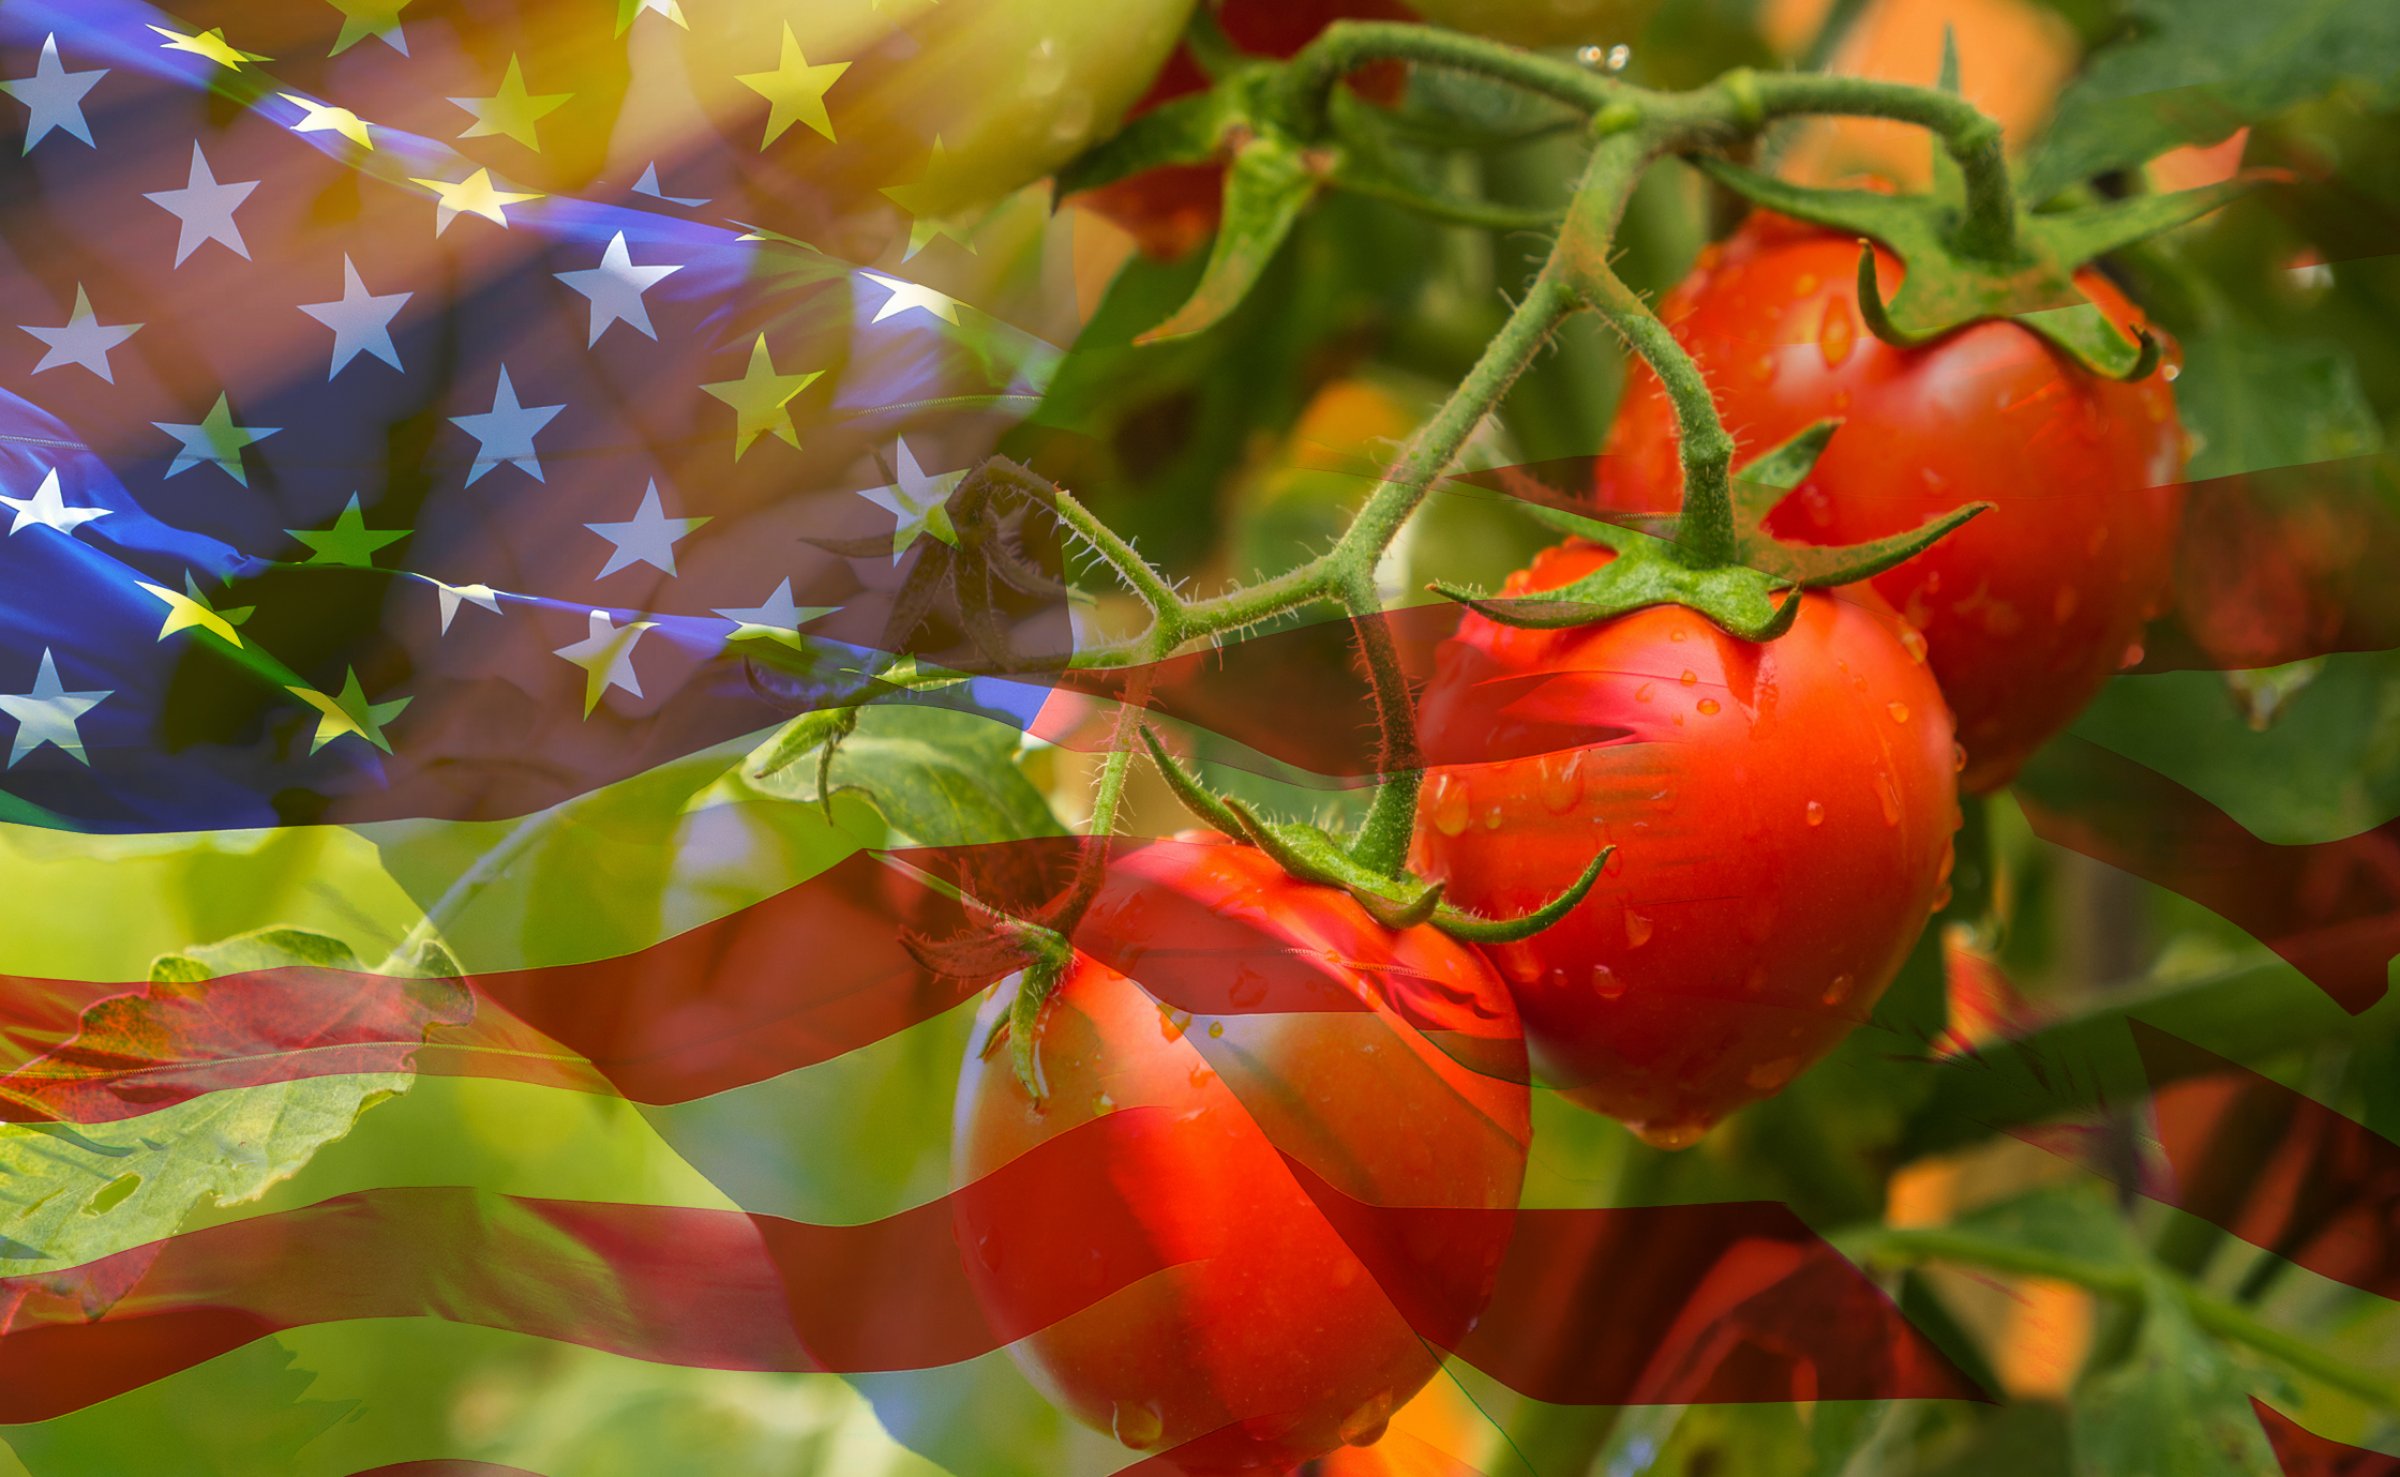 Tomato meets USA